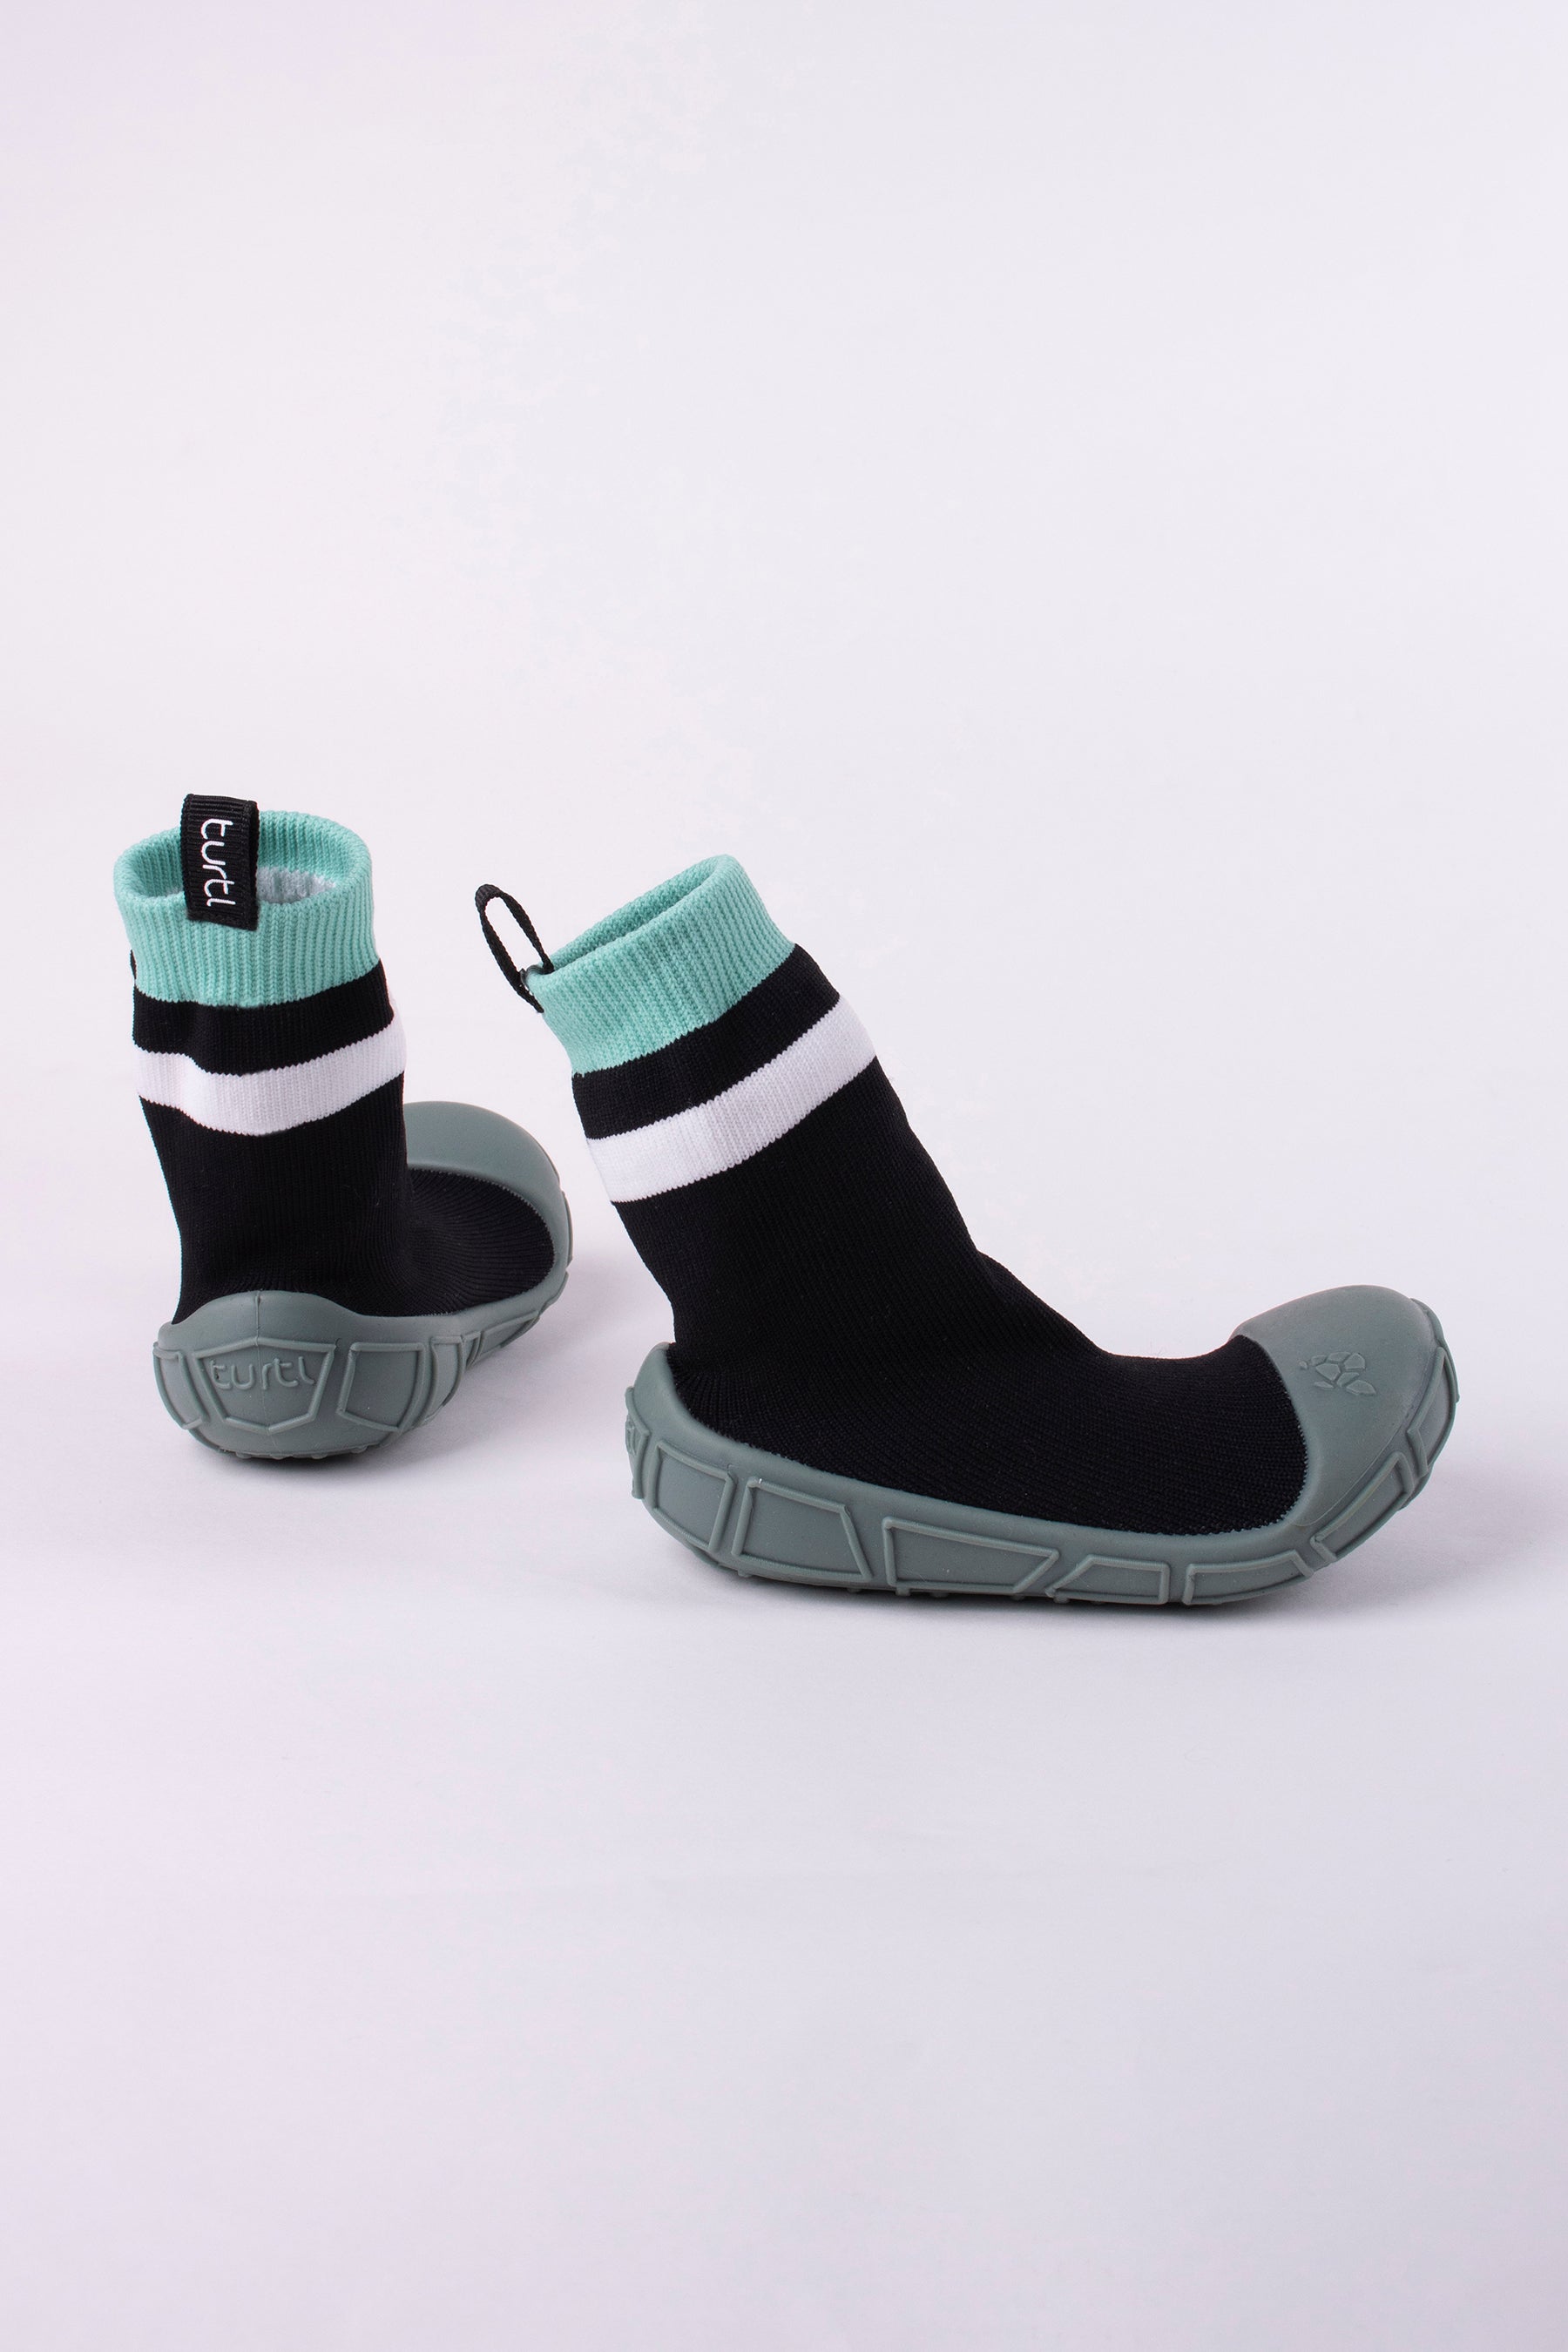 Kids Aqua Play Shoes | Eco-friendly & Slip Resistant | Swim & Play ...